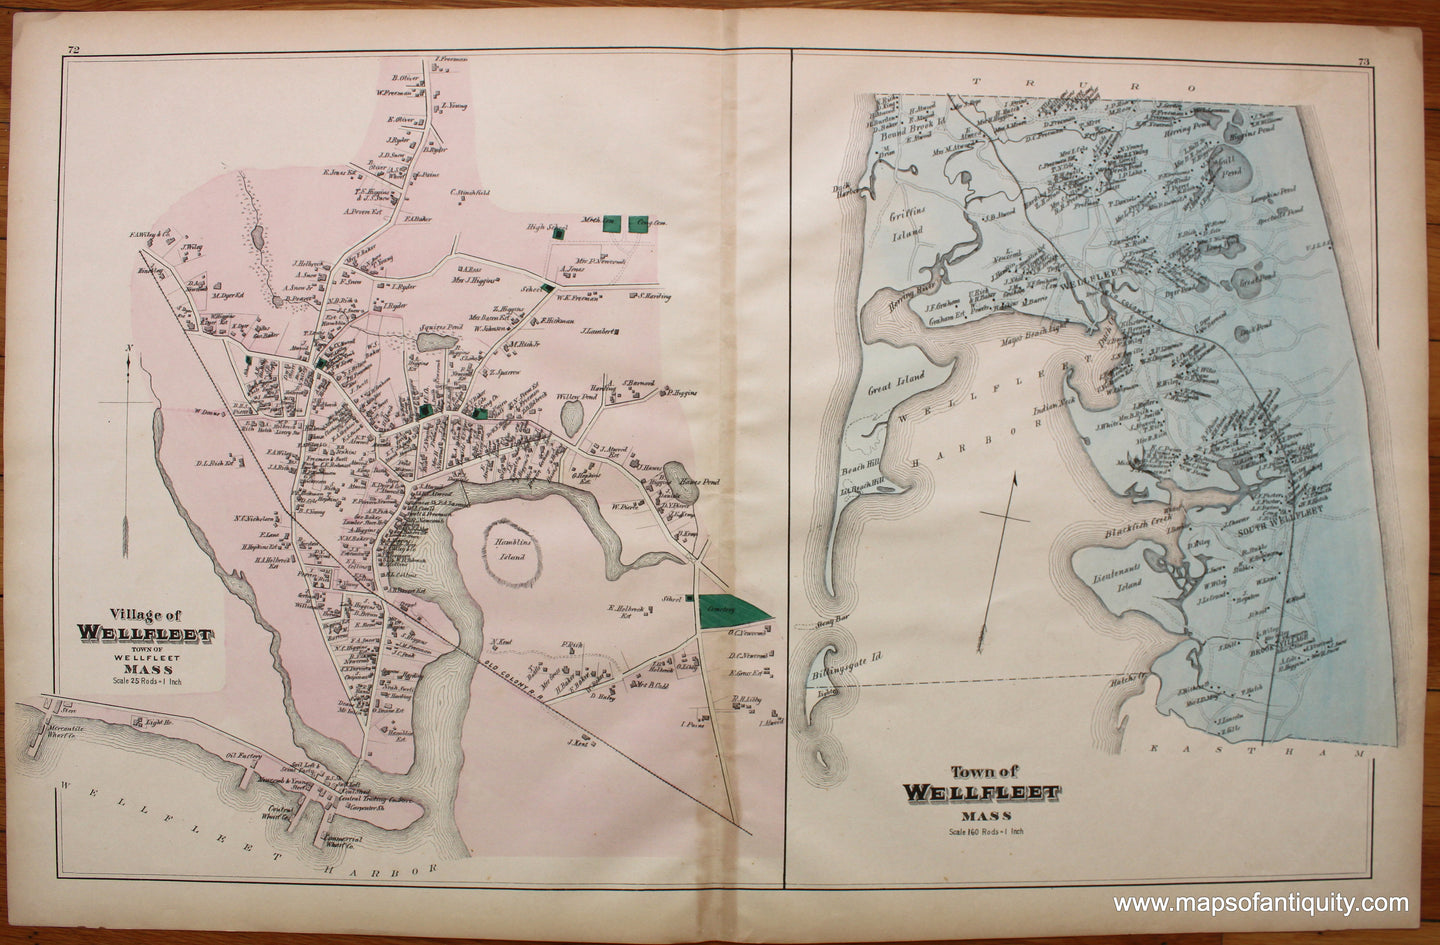 Antique-Map-Village-of-Wellfleet-and-Town-of-Wellfleet-pp.-72-73-Massachusetts-Maps-of-Antiquity